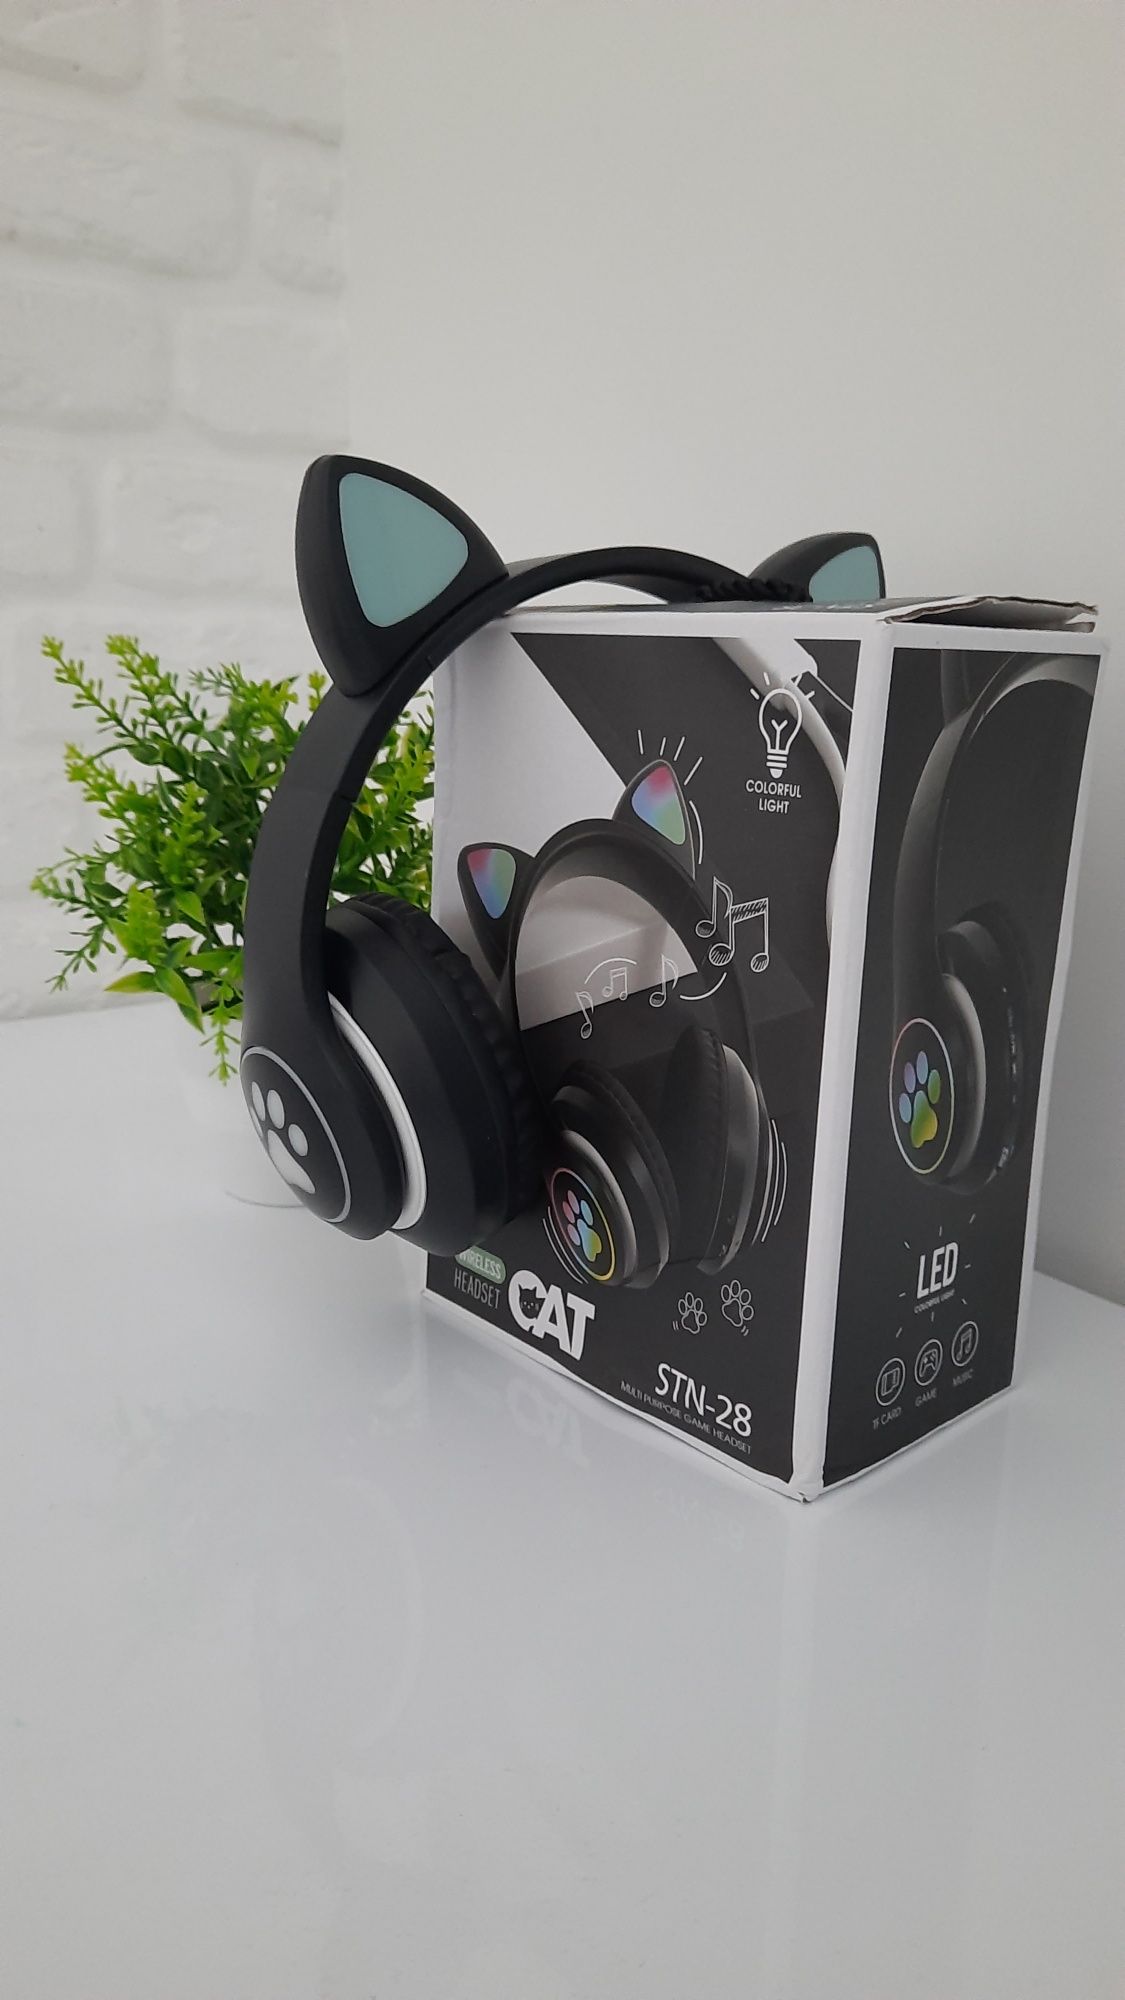 Безпровідні дитячі Bluetooth навушники з вушками Cat  STN-28